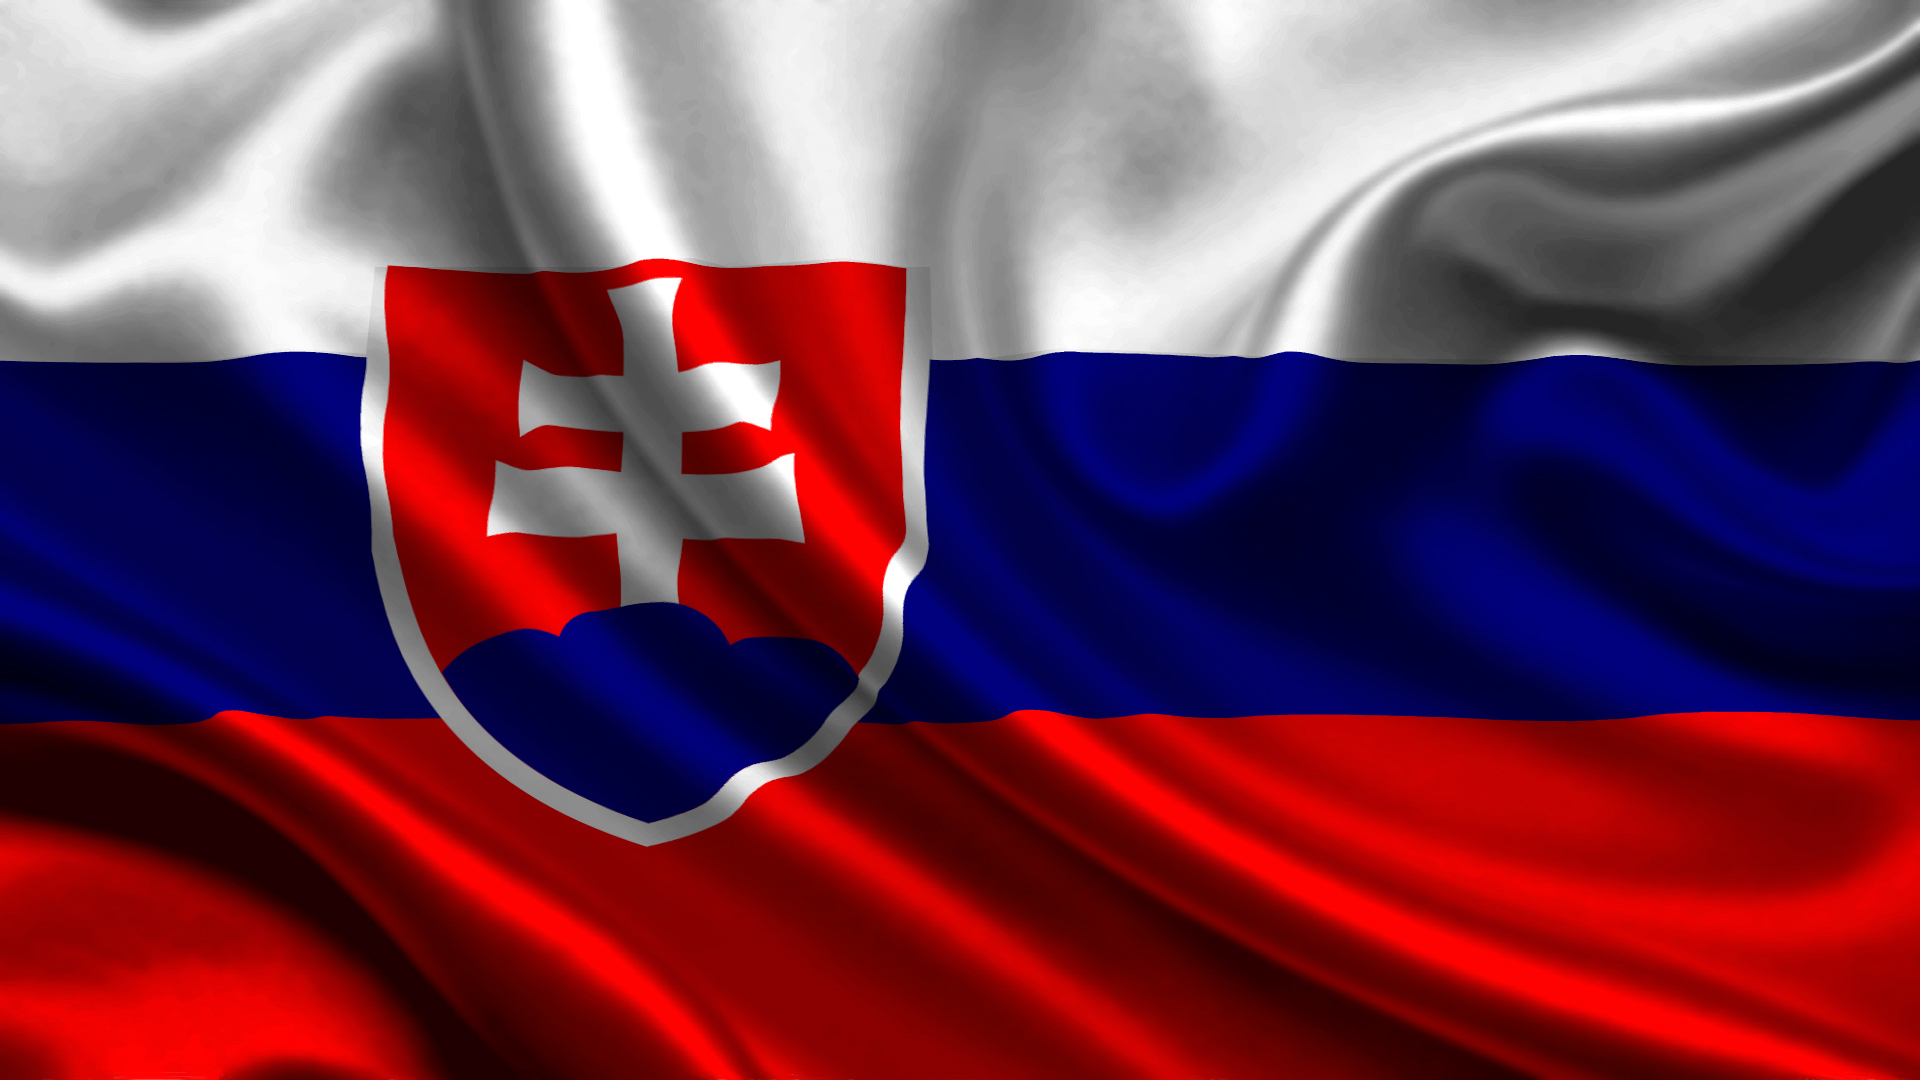 Flag Slovakia Wallpaper And Image